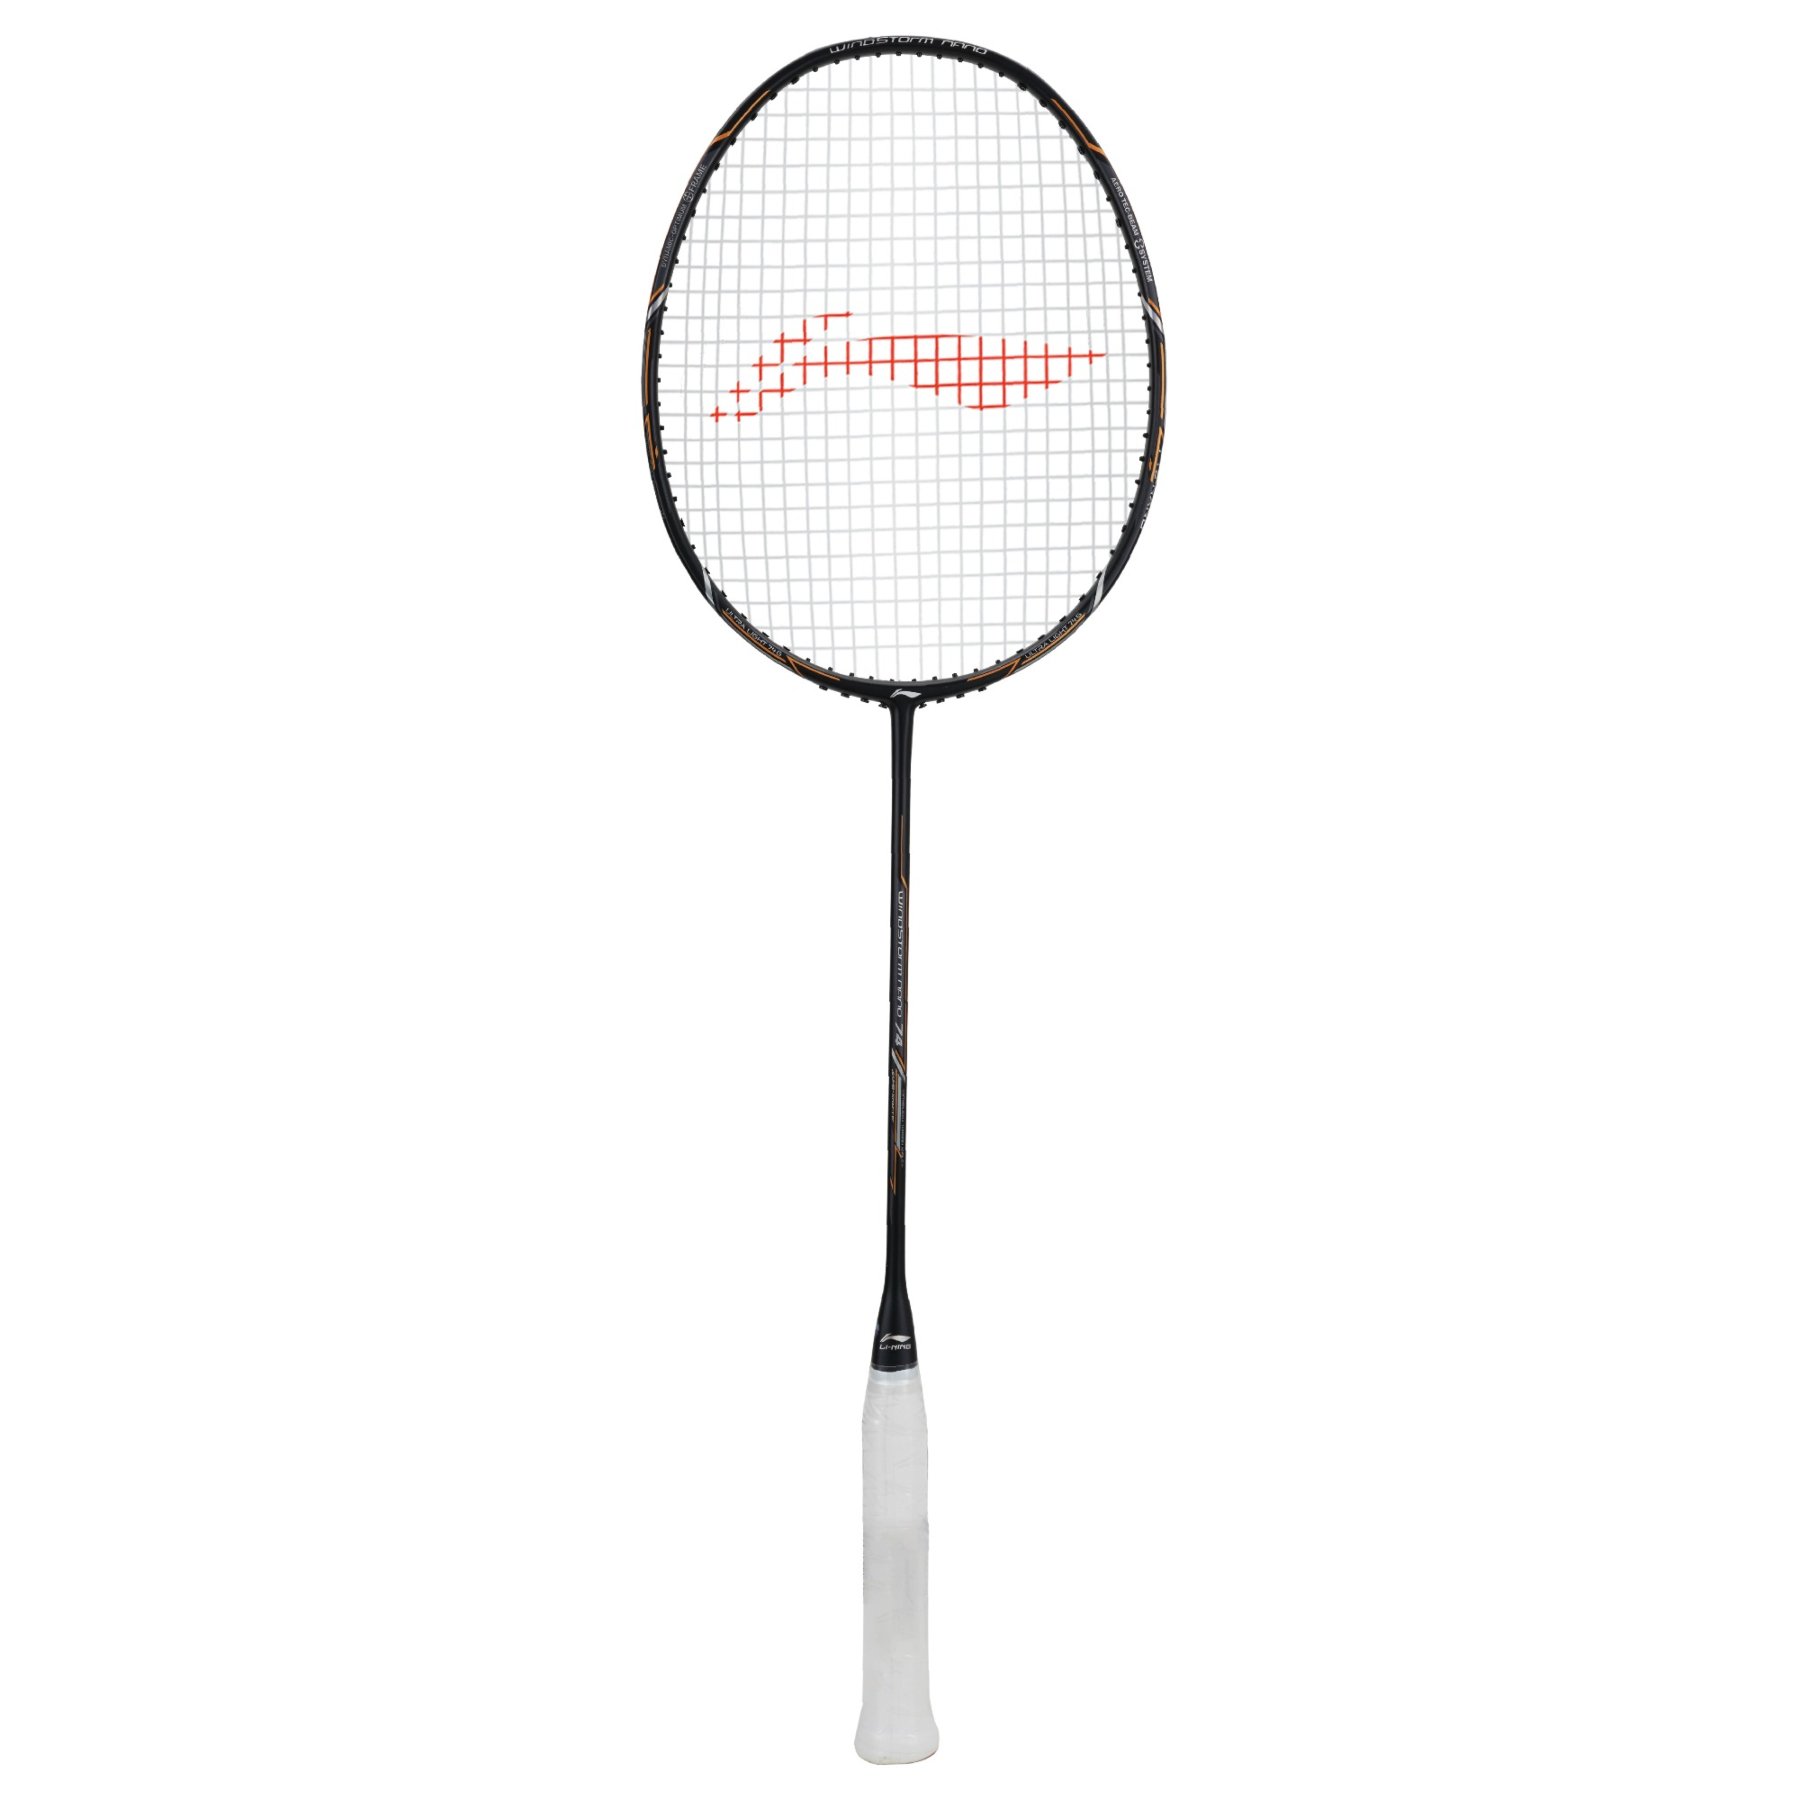 Buy Li-ning Windstorm Nano 74 Aypp484-4 Badminton Racket Online in UAE Sharaf DG